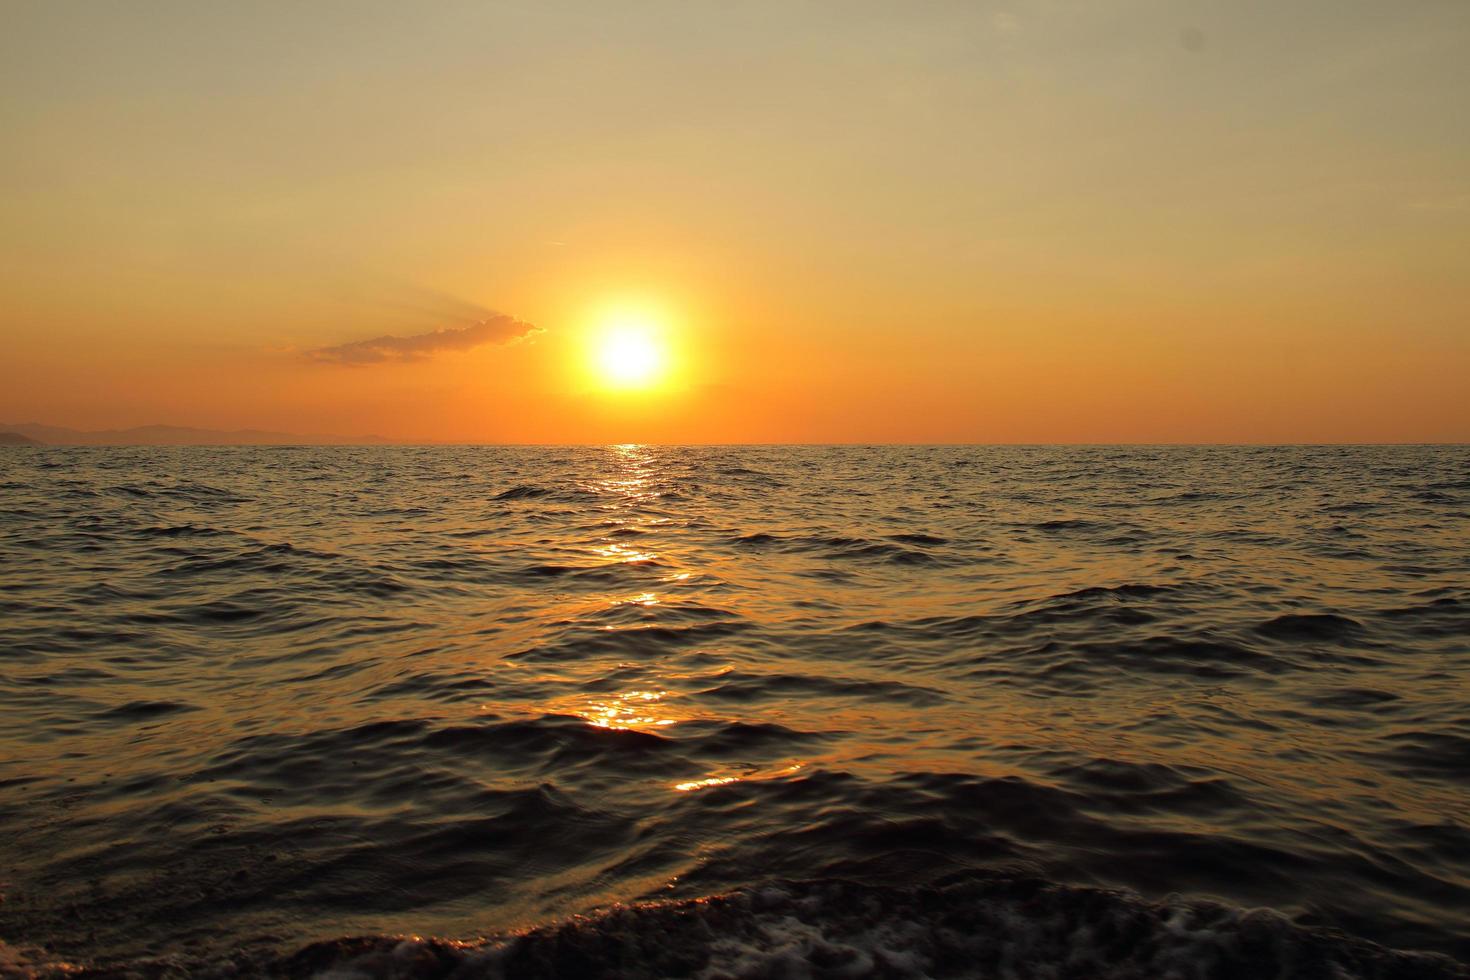 coucher de soleil orange vif sous l'océan. réflexion du soleil sur l'eau pittoresque, crépuscule jaune, paysage naturel paisible photo